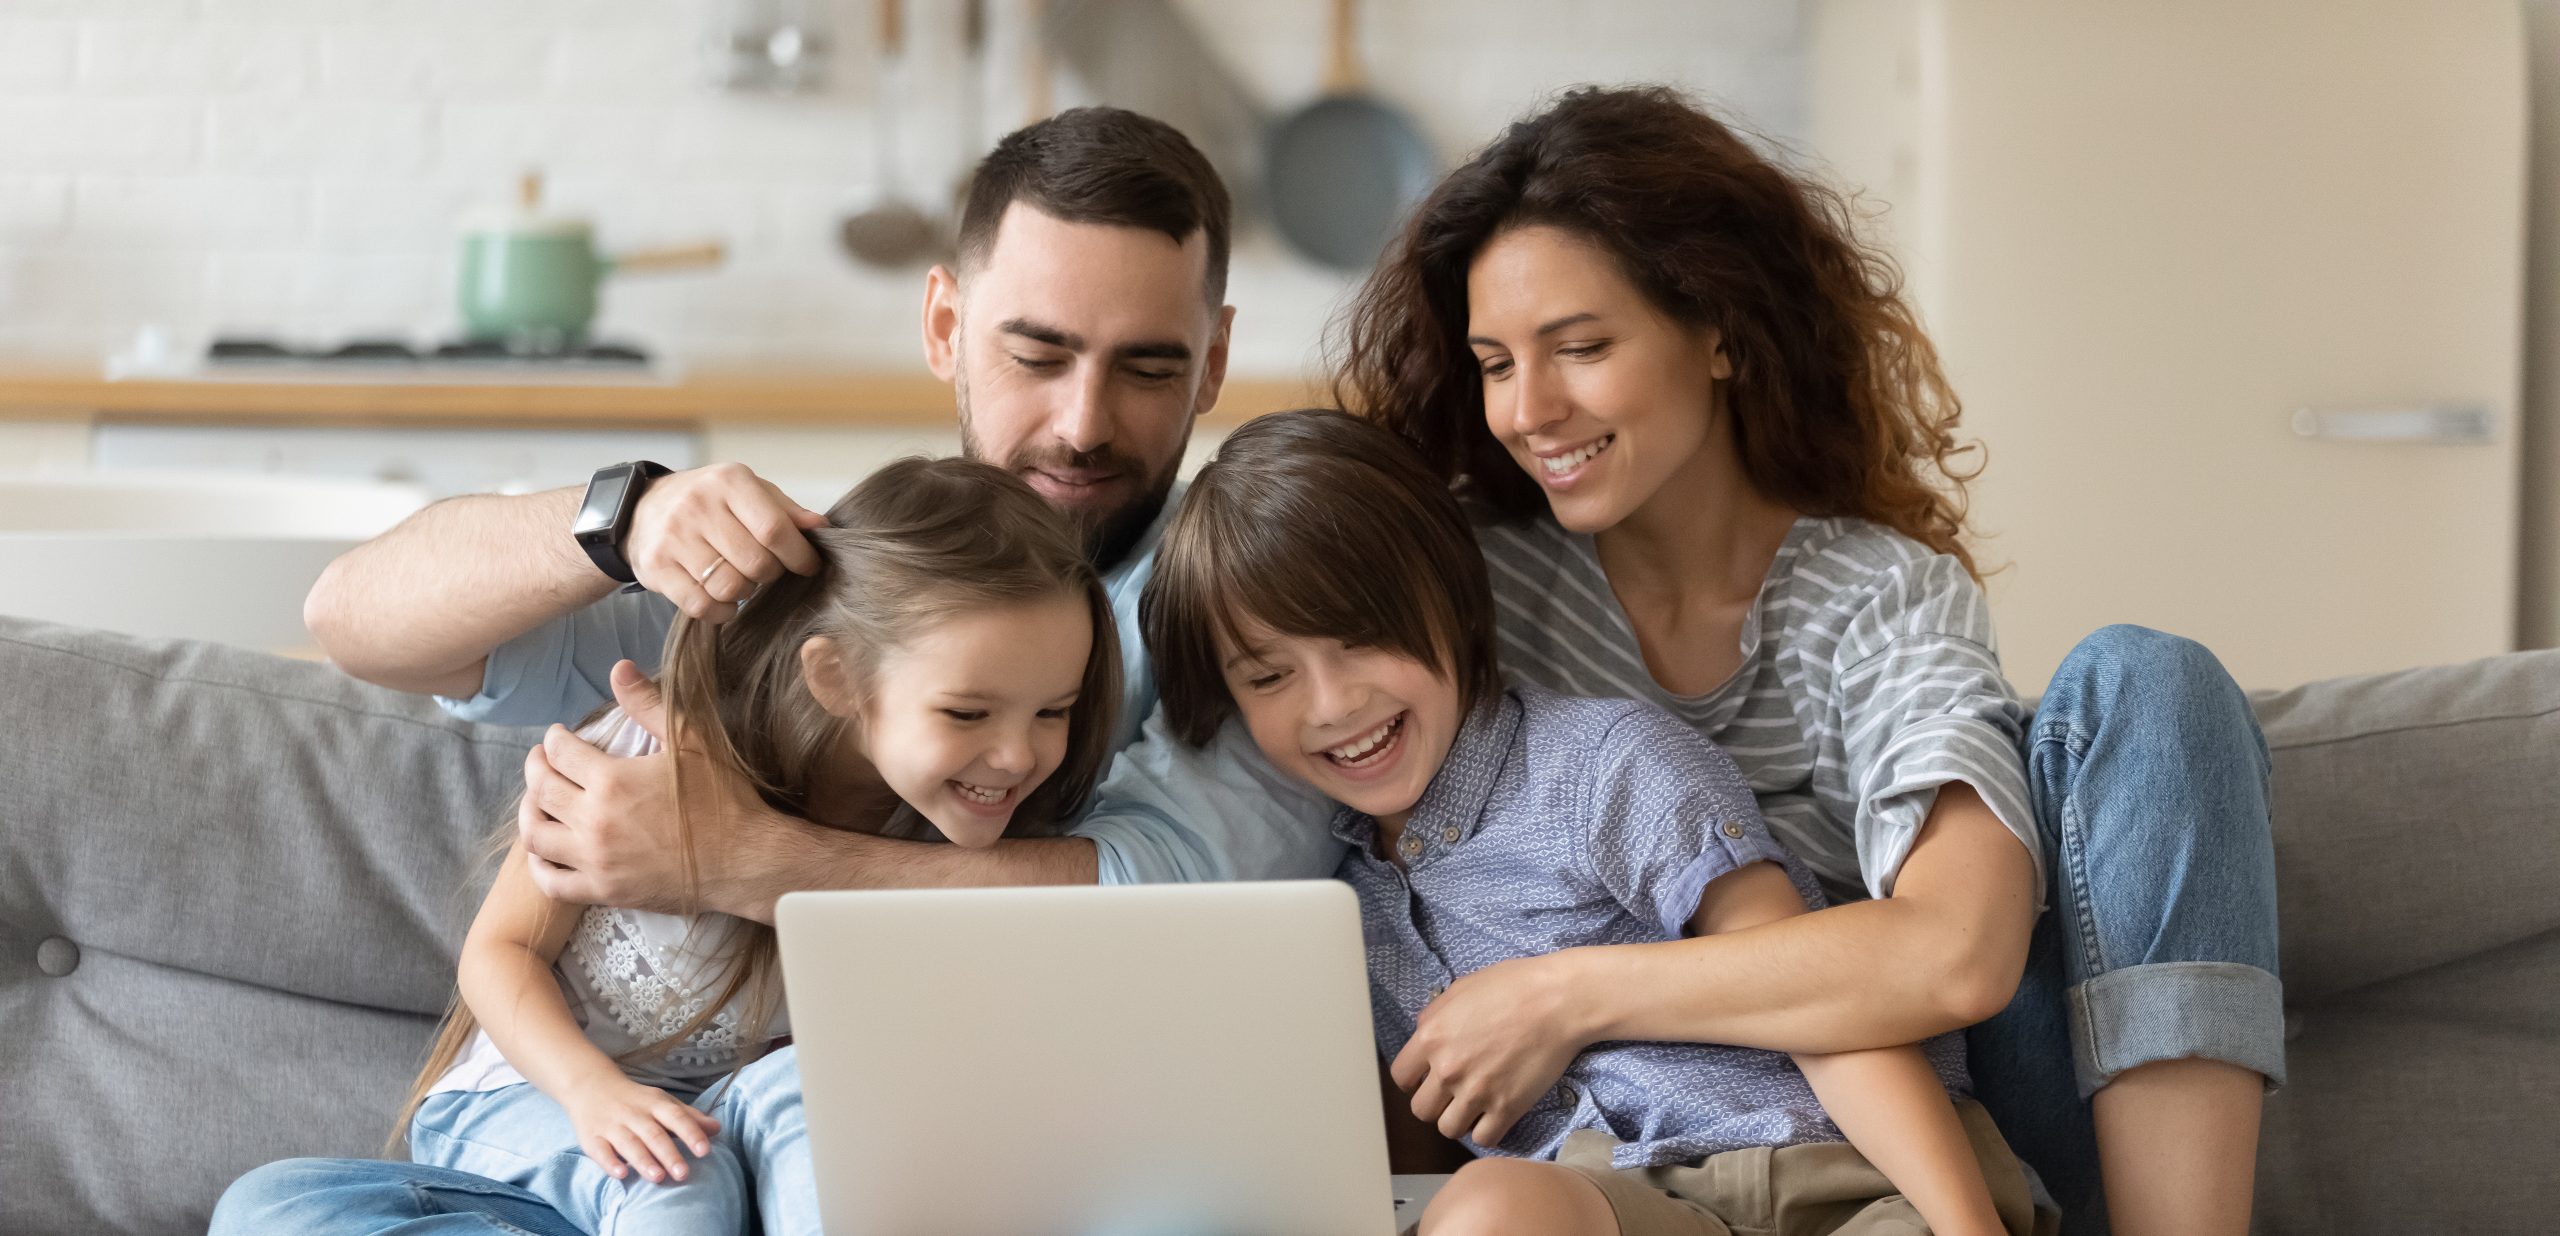 Une jeune famille souriante de quatre personnes assise sur un canapé, regardant un ordinateur portable